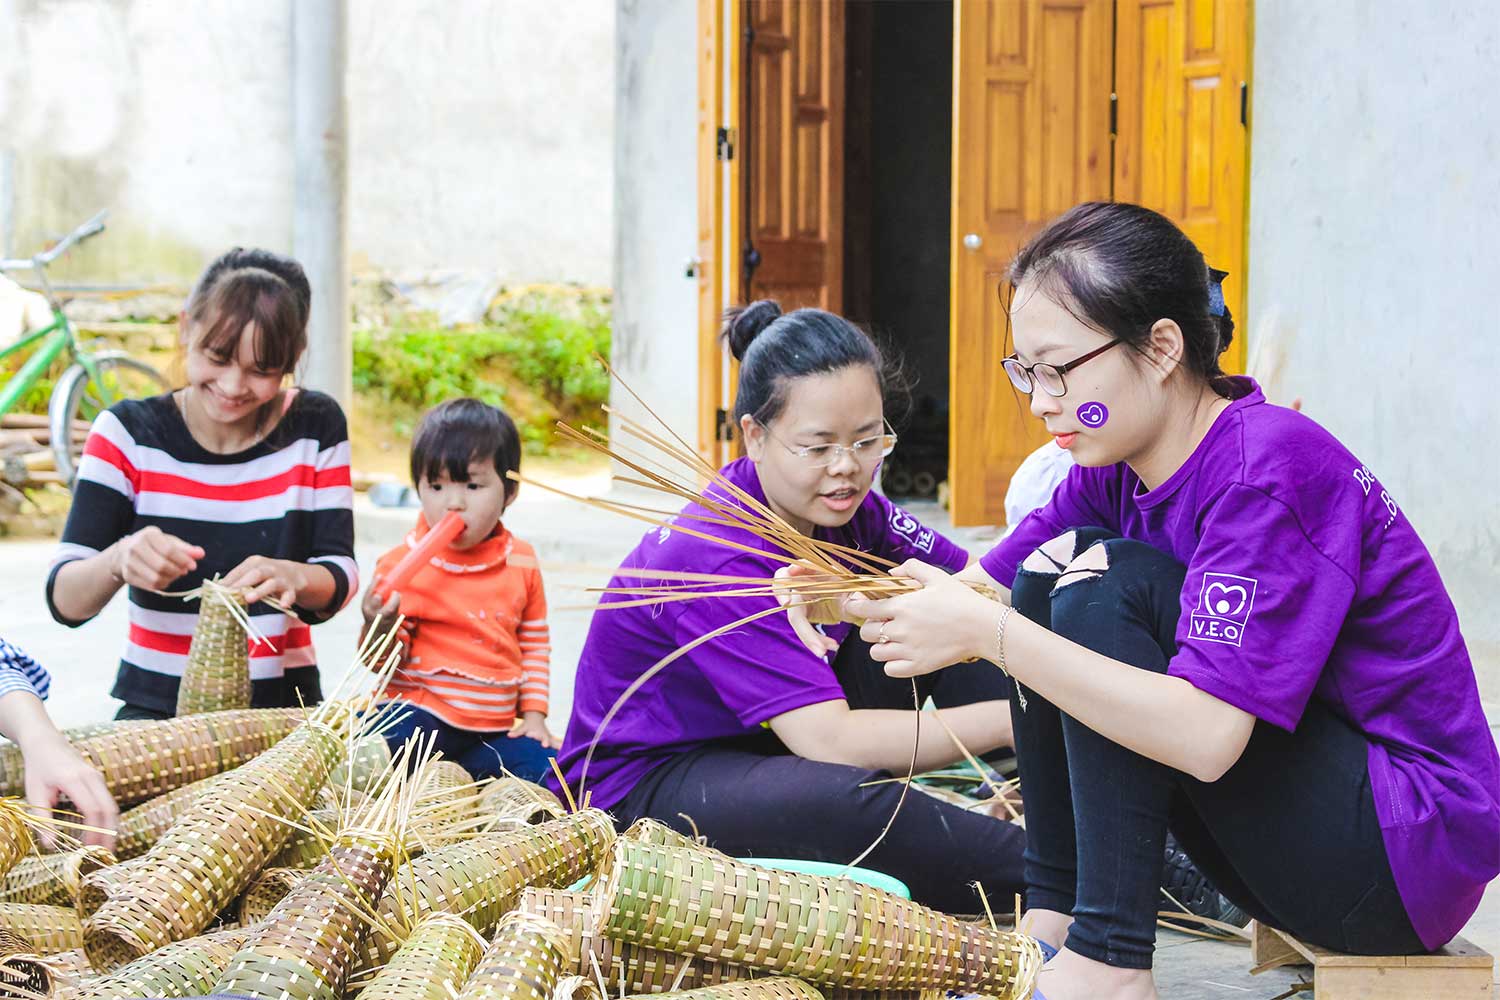 Du lịch tình nguyện - Hướng phát triển bền vững cho Việt Nam - 3